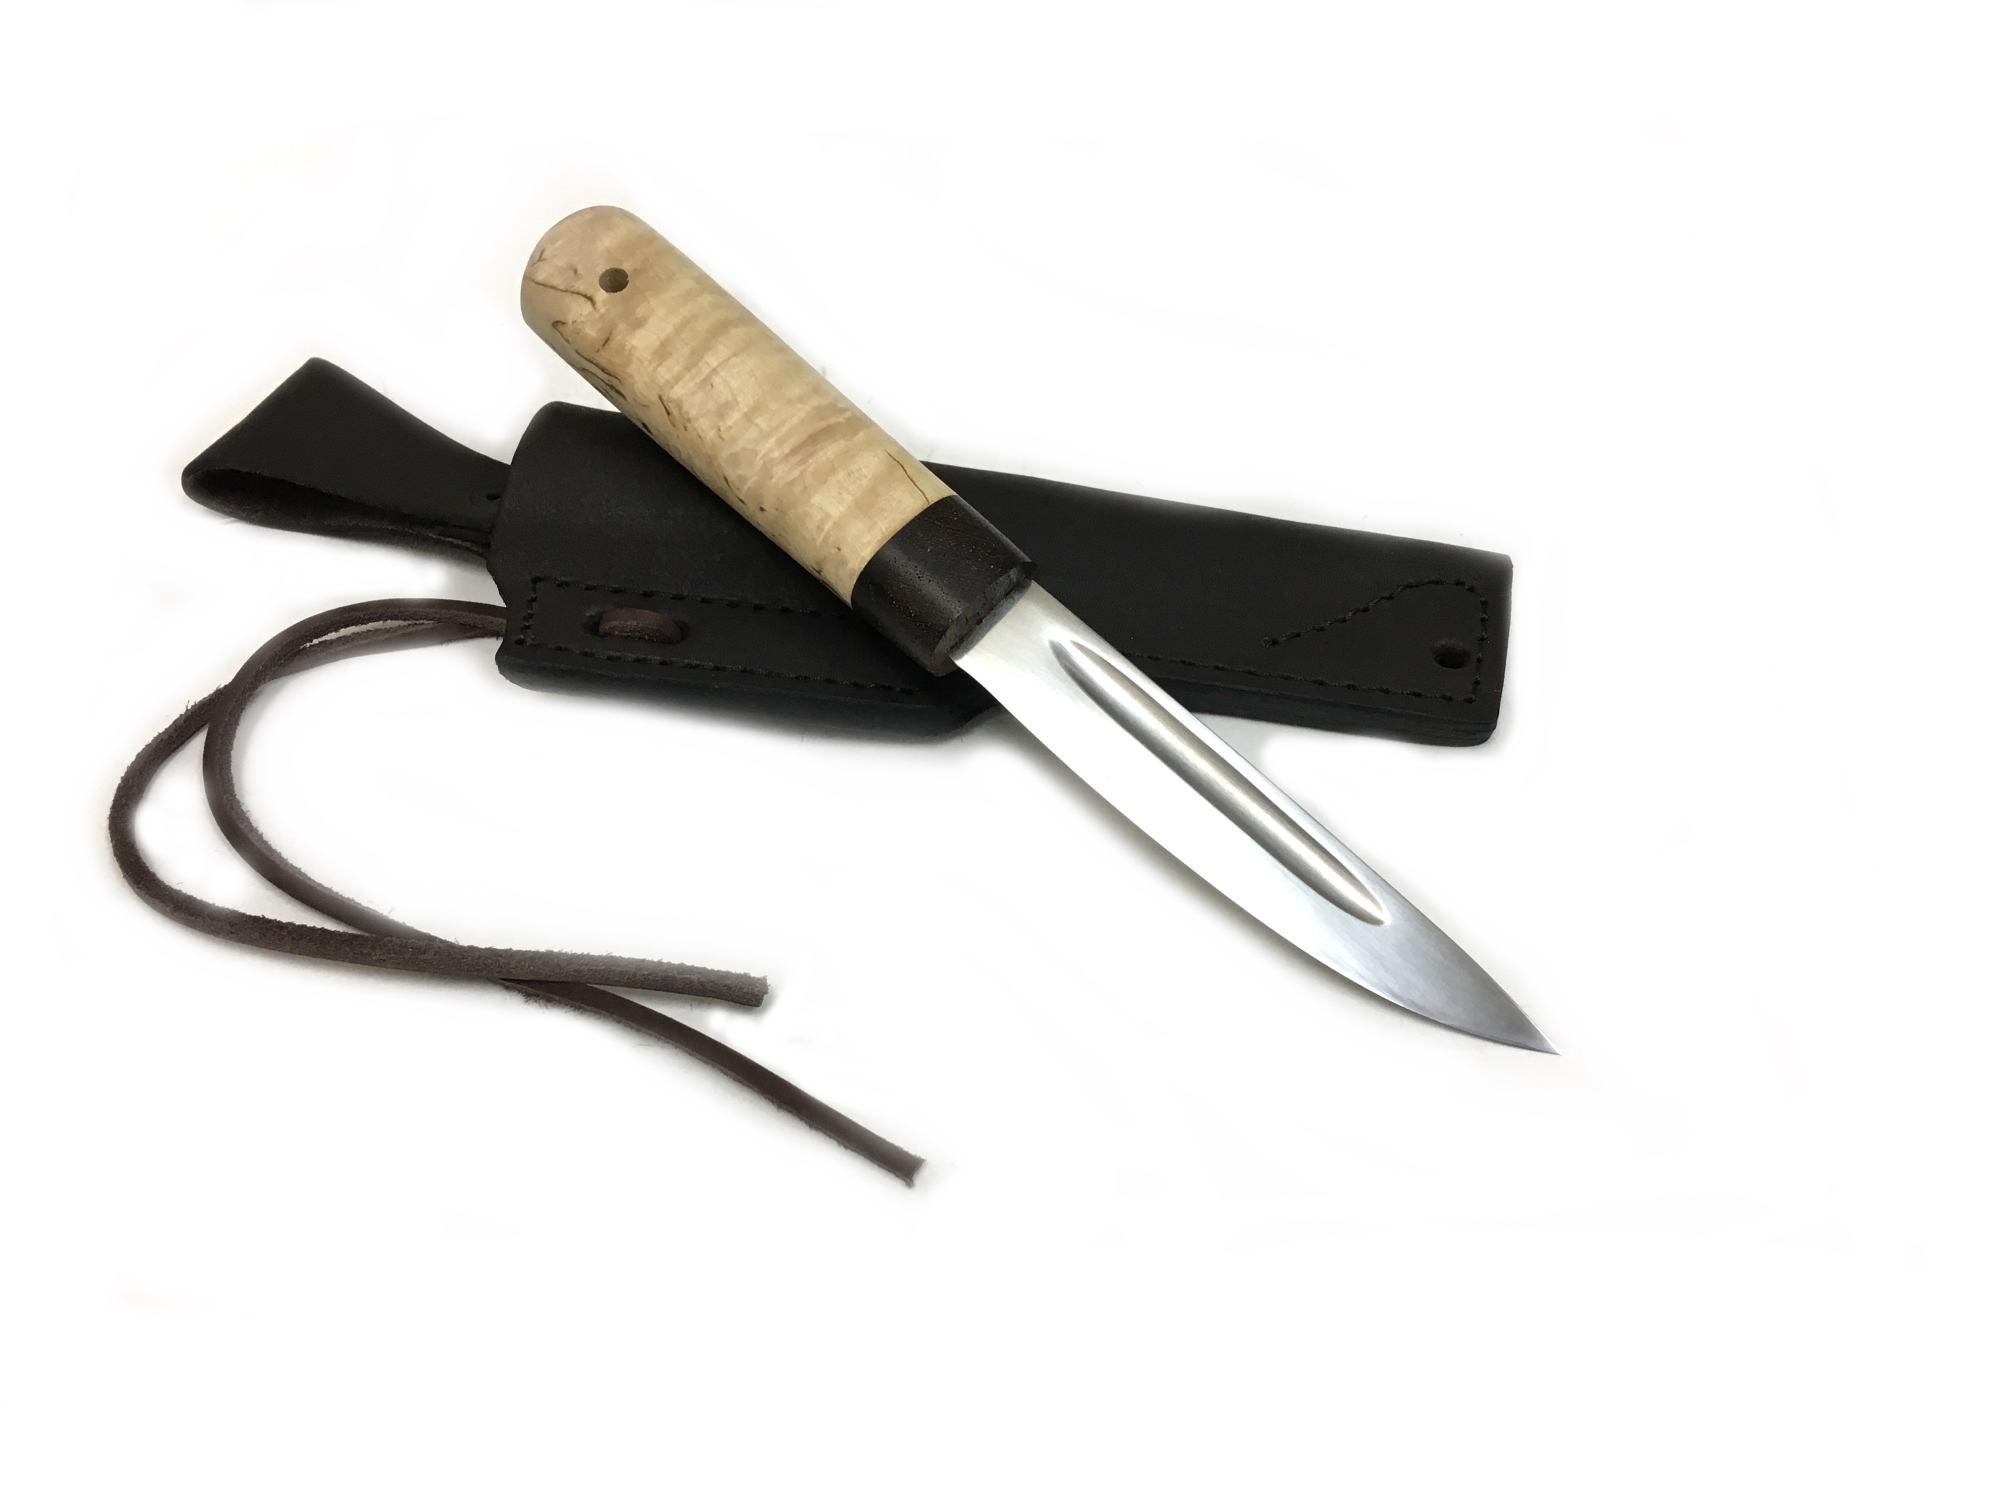 Якутские ножи - влияние моды или универсальный полевой нож?